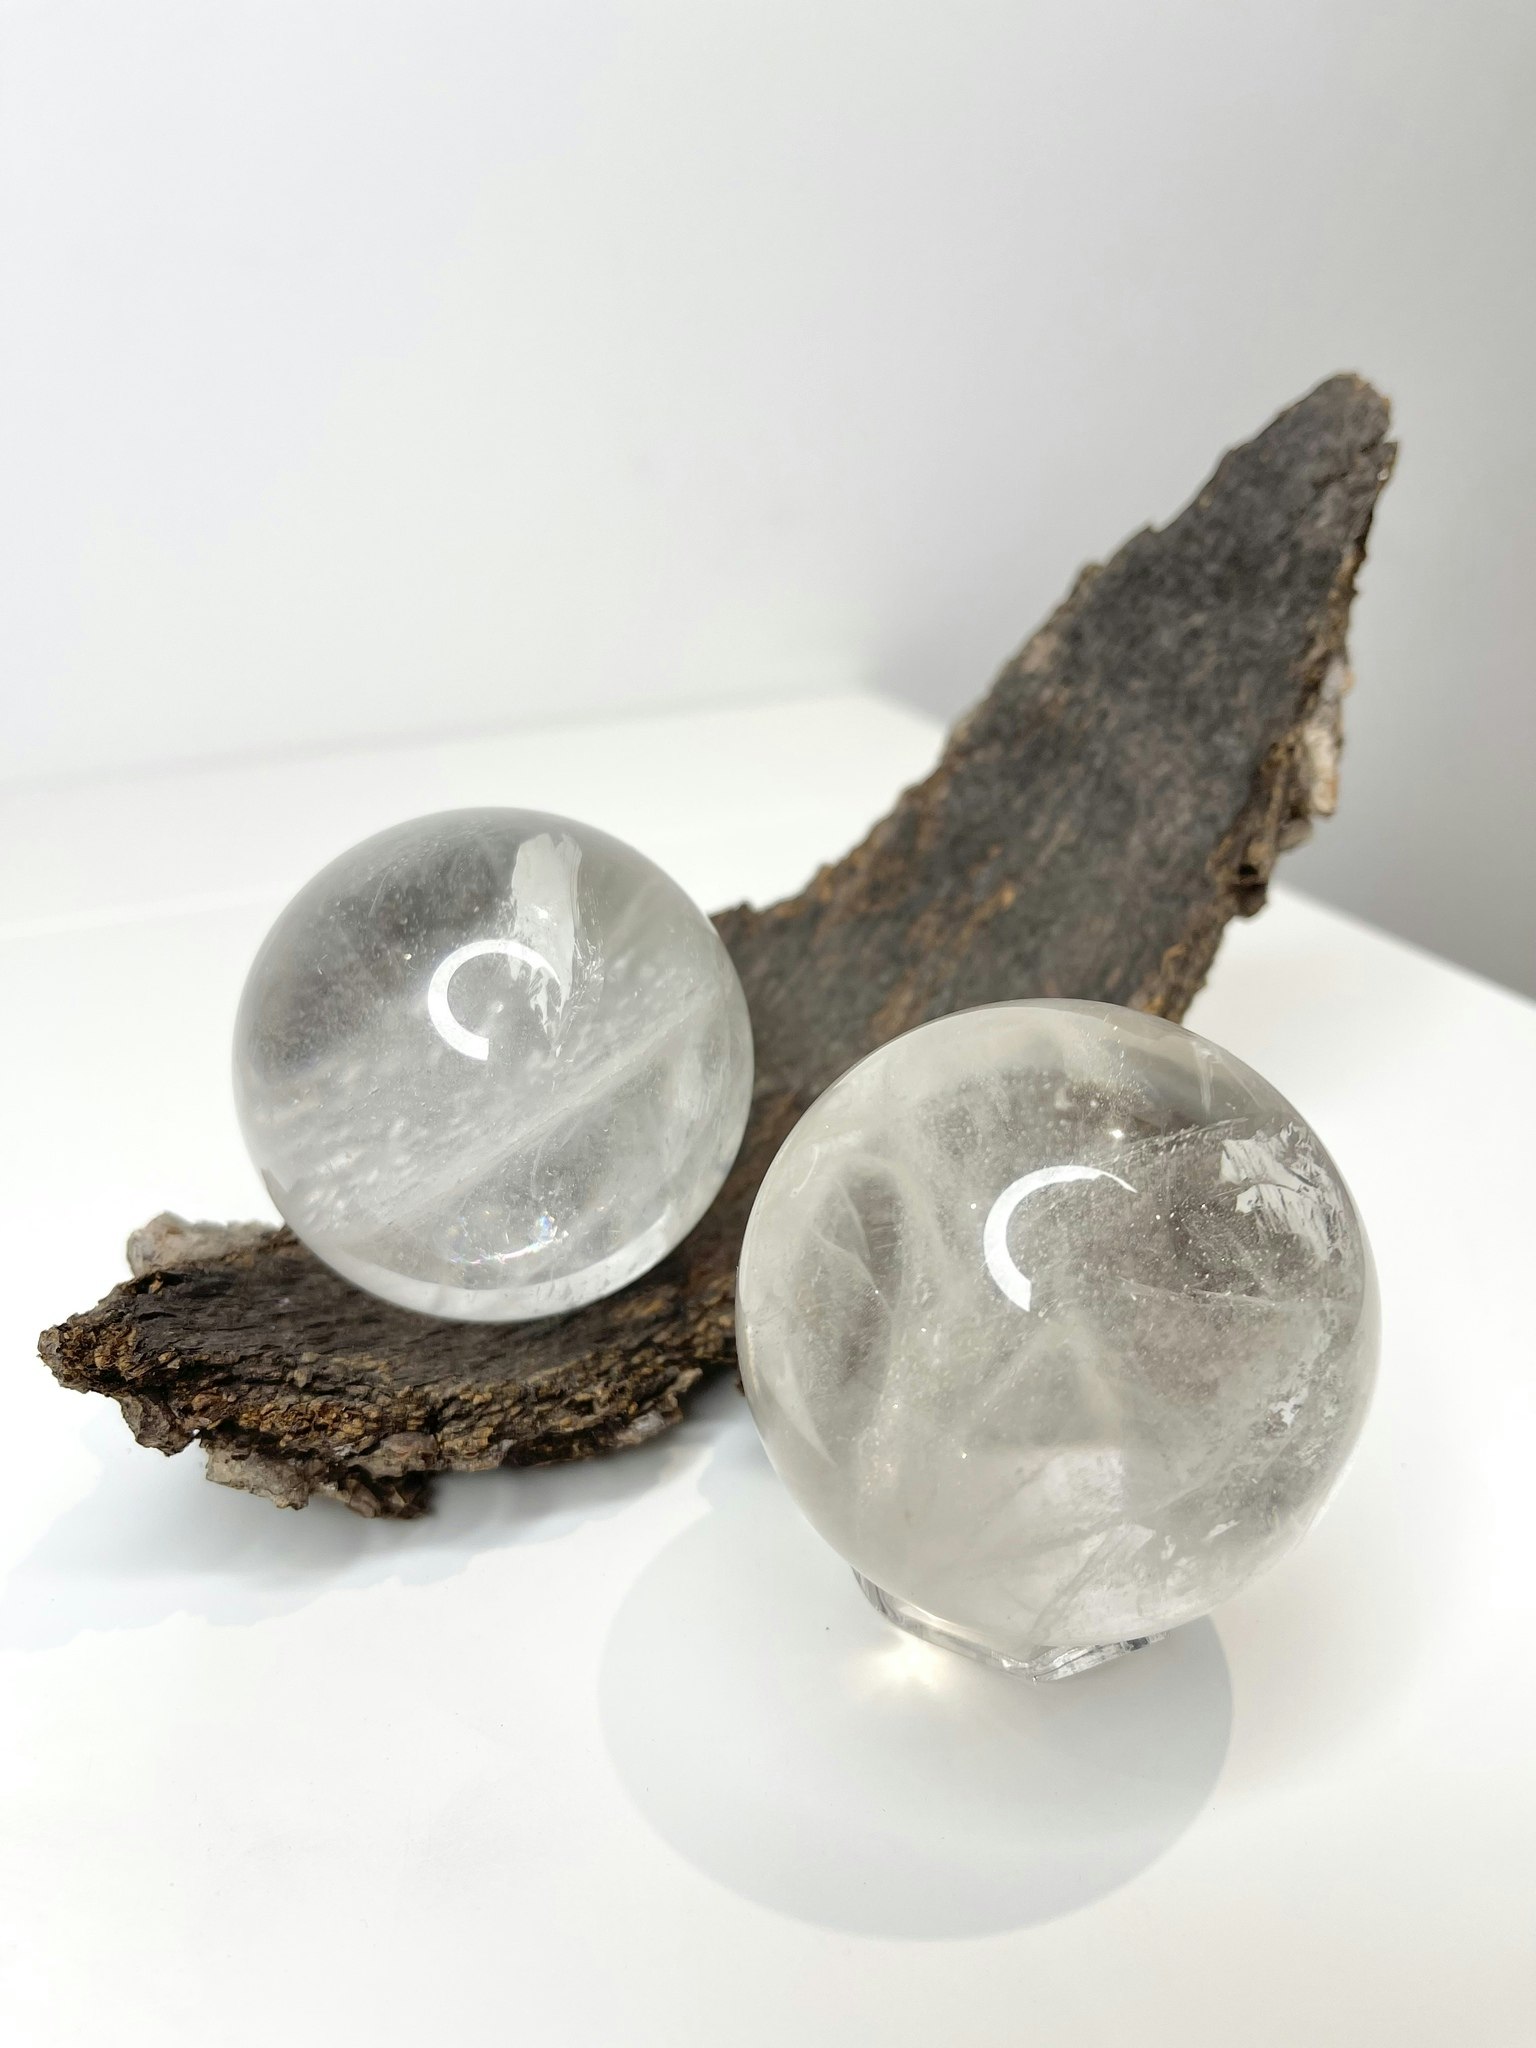 Bergkristall (clear quartz), klot